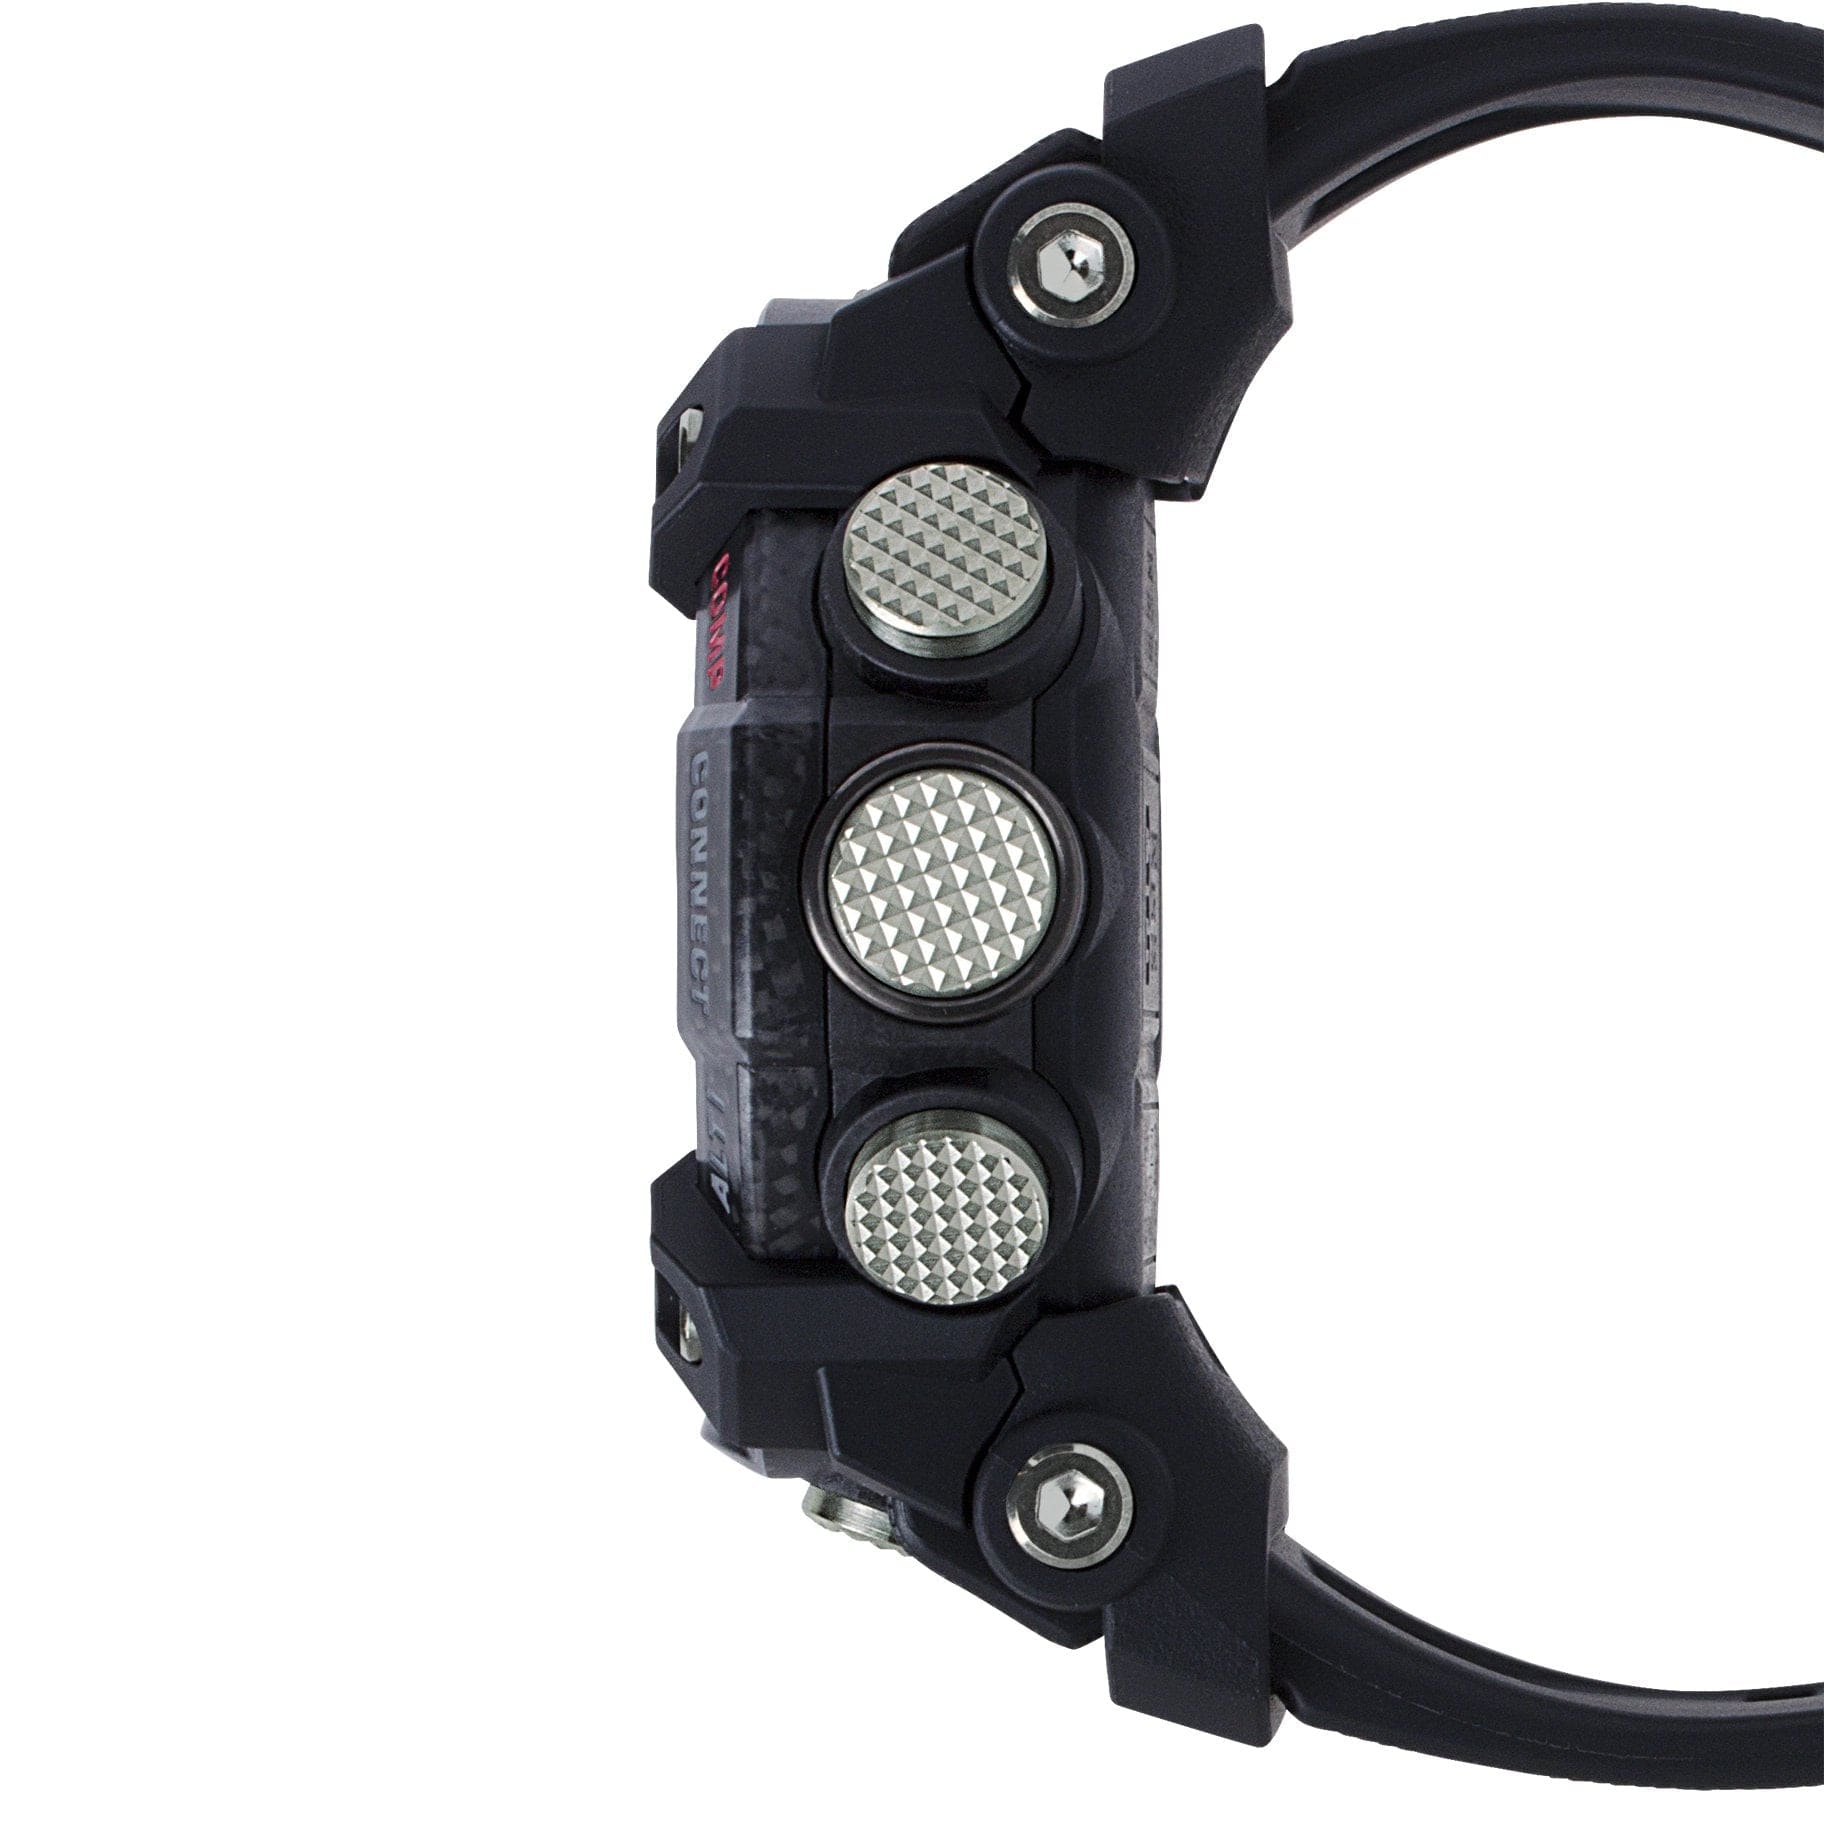 Casio Mudmaster G-Shock with Quad Sensor Black Resin Watch GGB100-1A - PilotMall.com